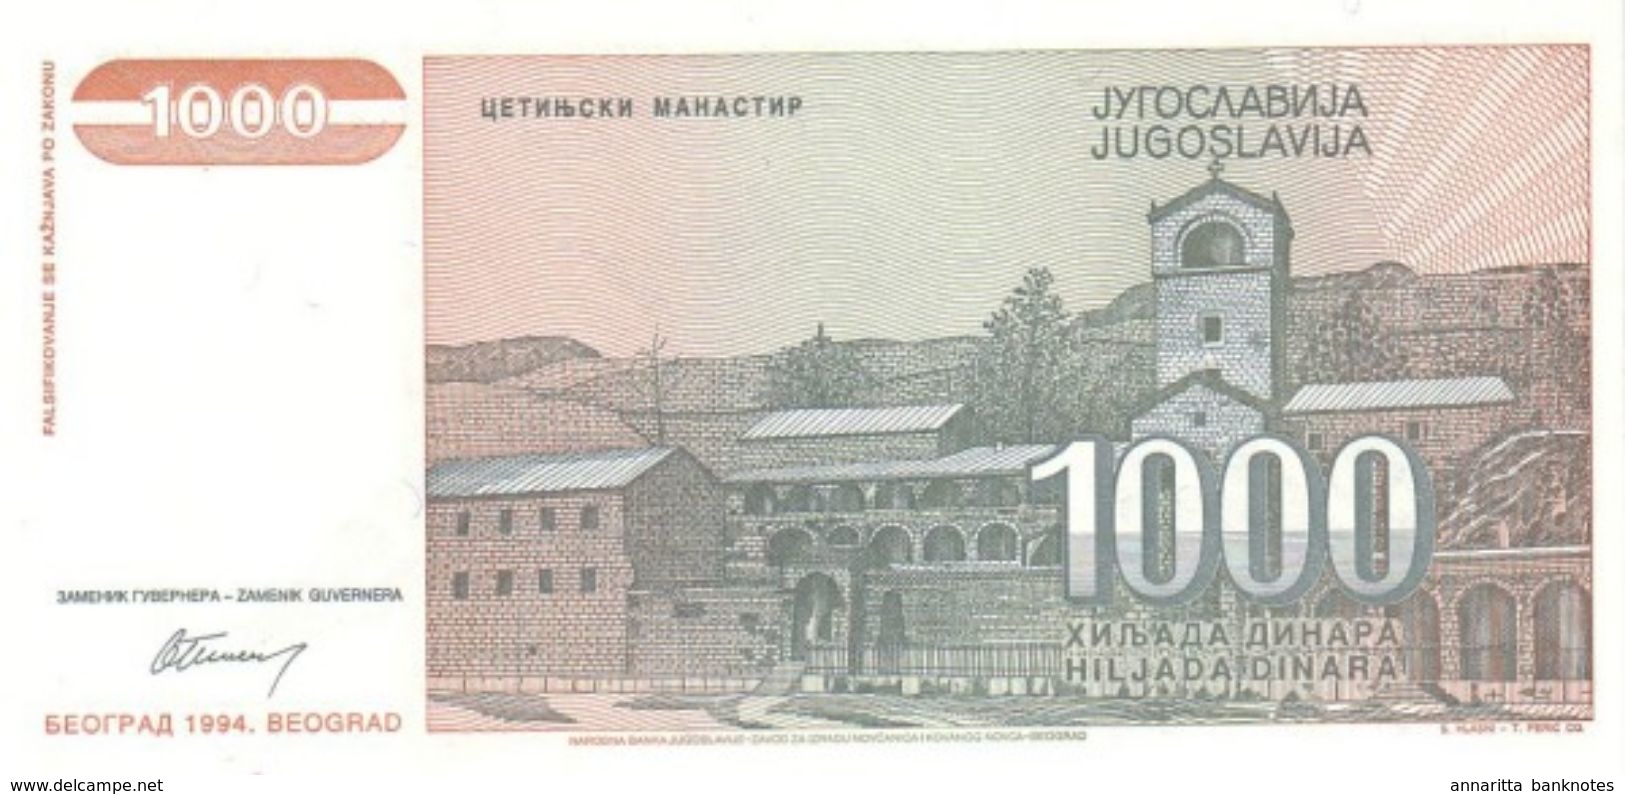 YUGOSLAVIA 1000 DINARA 1994 P-140a UNC  [YU140a] - Yugoslavia